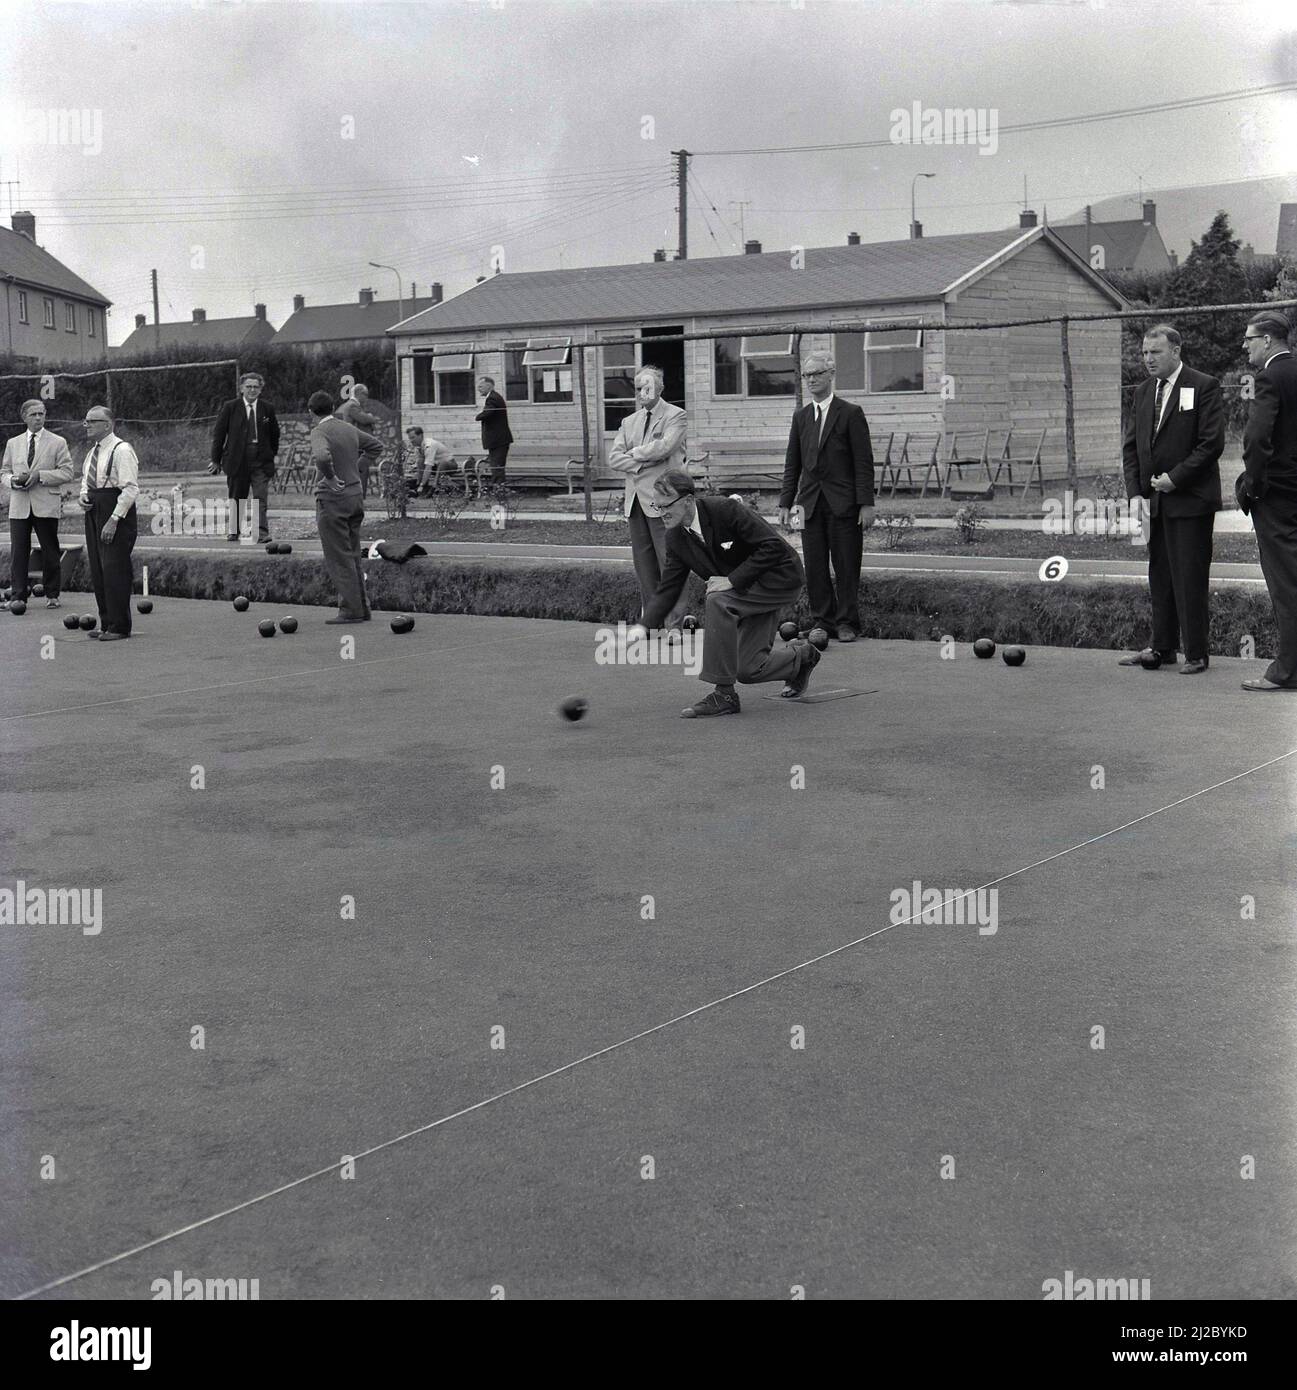 1950s, historique, un match de boules, des hommes dans la robe de l'époque, costumes et cravates, prenant part à une compétition de bowling vert couronne, Port Talbot, pays de Galles, Royaume-Uni. Banque D'Images